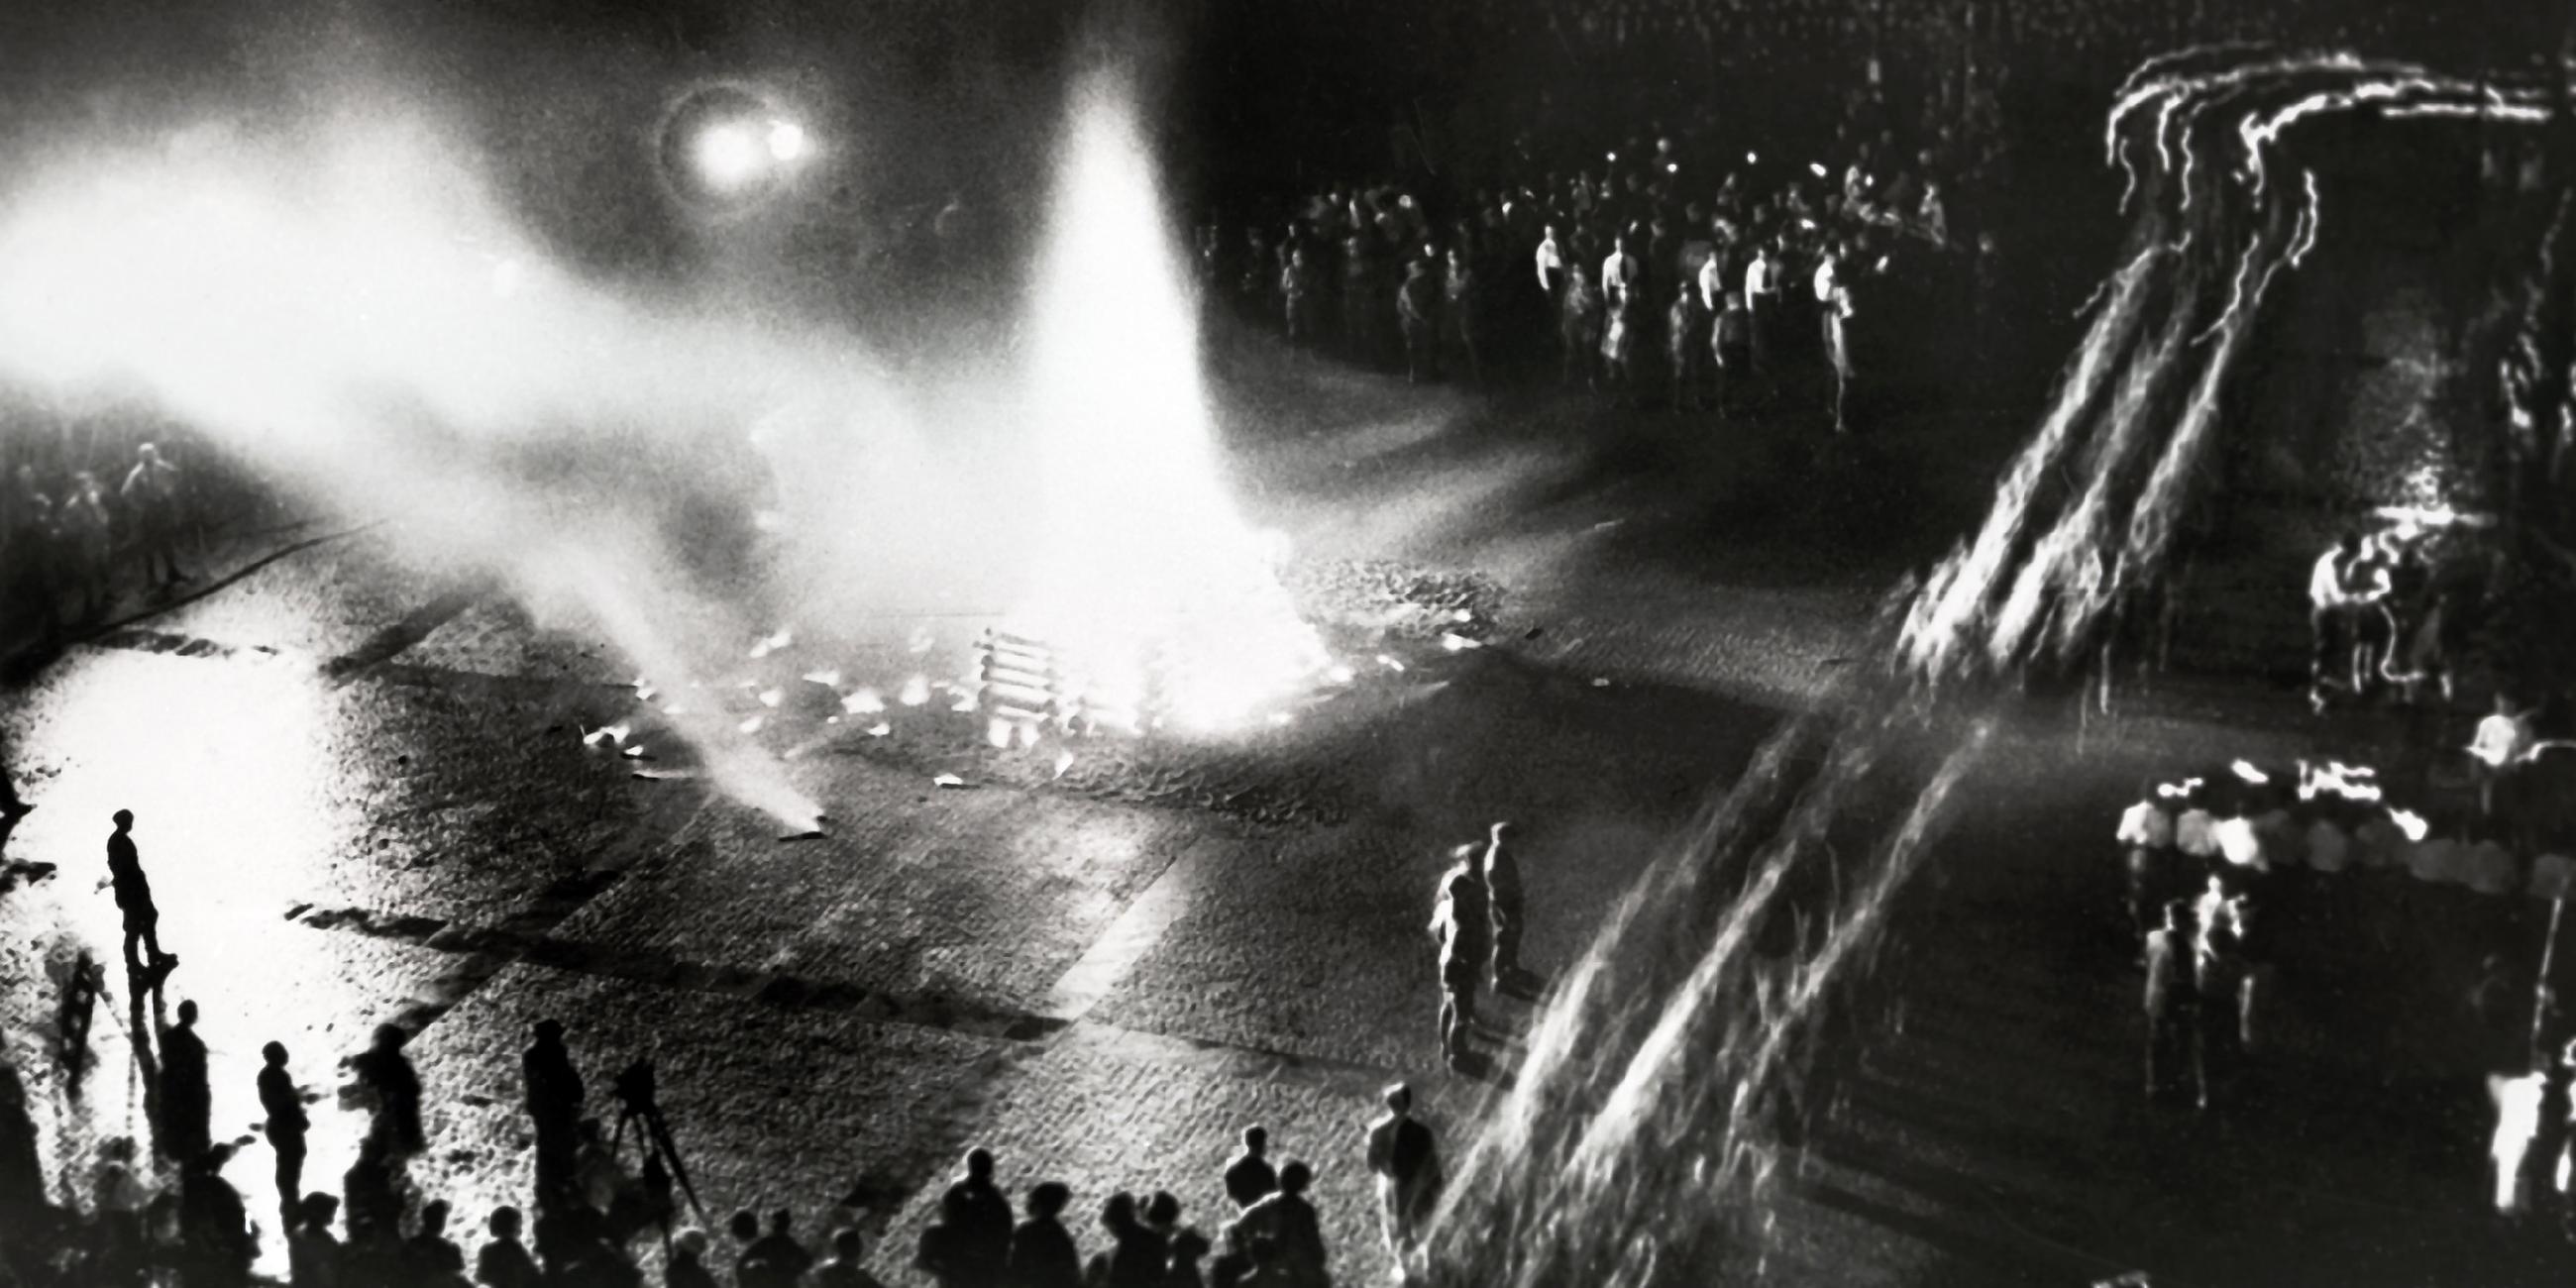 Bücherverbrennung auf dem Opernplatz in Berlin, aufgenommen am 0.05.1933